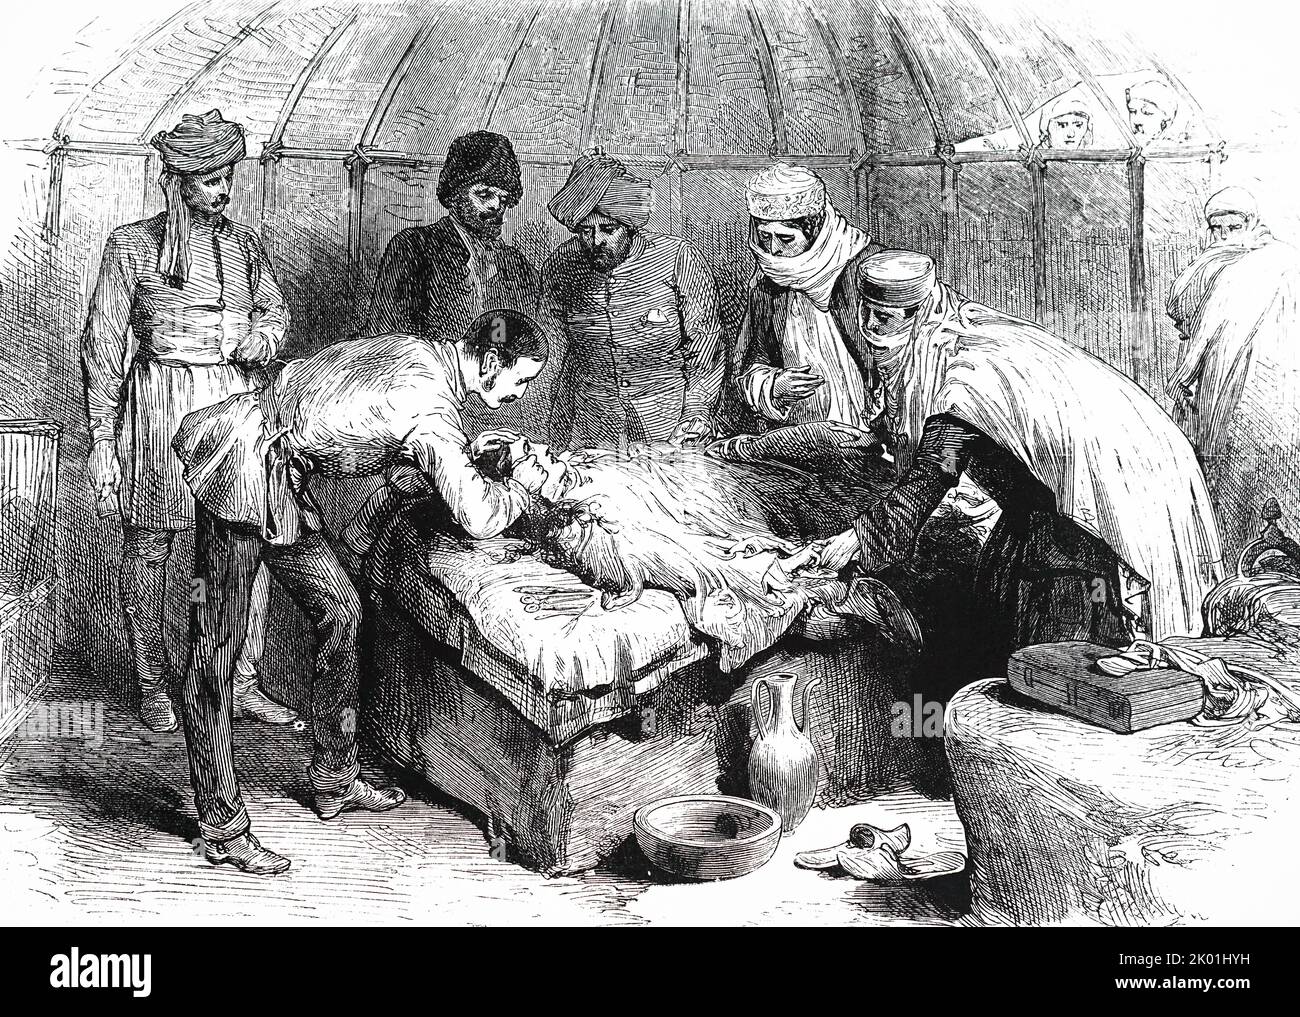 CW Owen, cirujano de la Comisión de Fronteras Afgana, le practicó cirugía plástica a una mujer que había caído en el fuego y le había quemado la cara alrededor del ojo. Paciente bajo cloroformo. De The Illustrated London News, 1885. Foto de stock